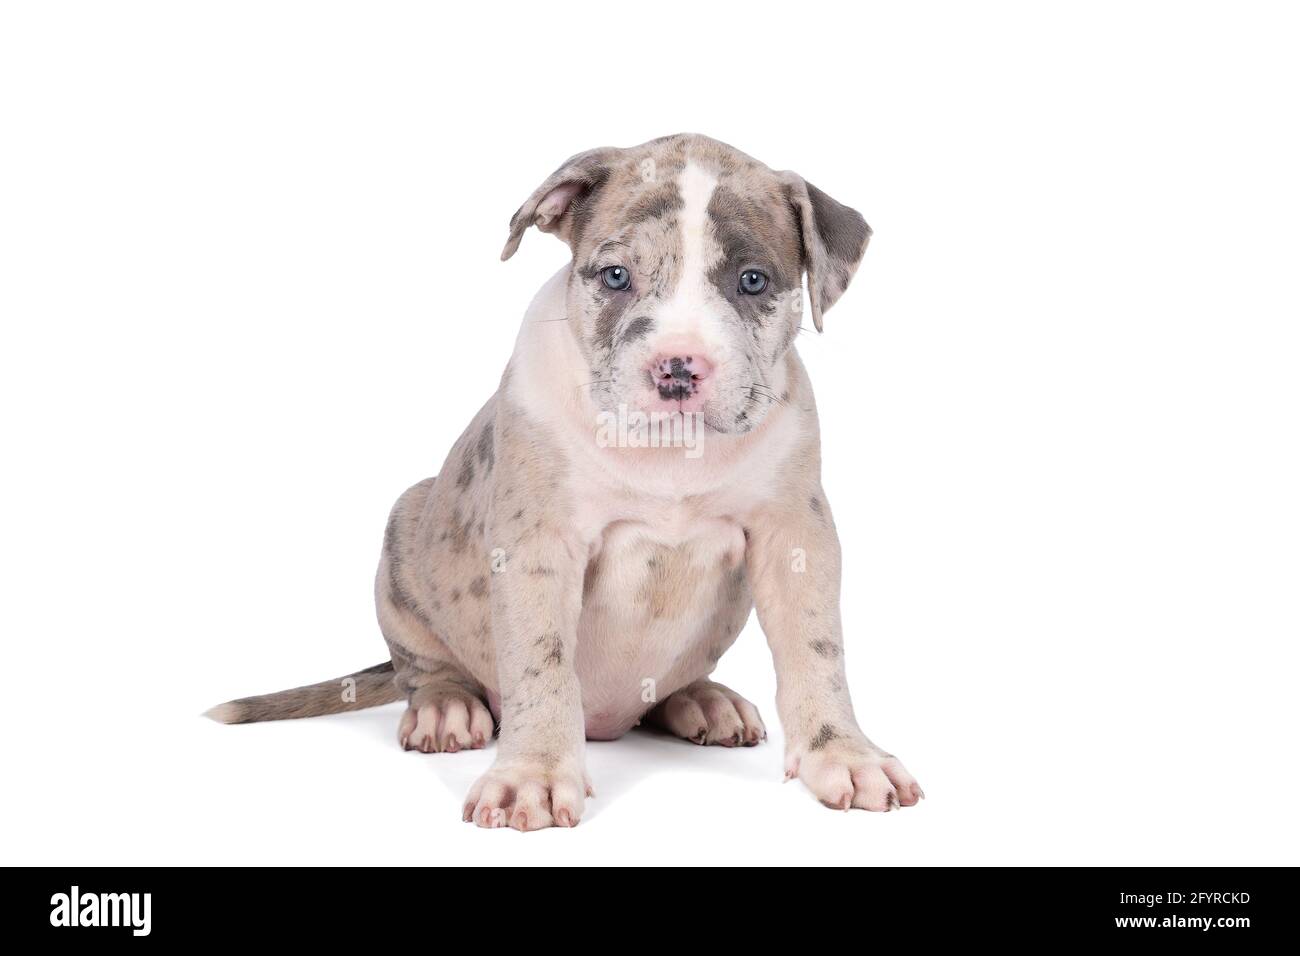 Un petit Bully américain ou Bulldog de race bleue et fourrure blanche isolée sur fond blanc Banque D'Images